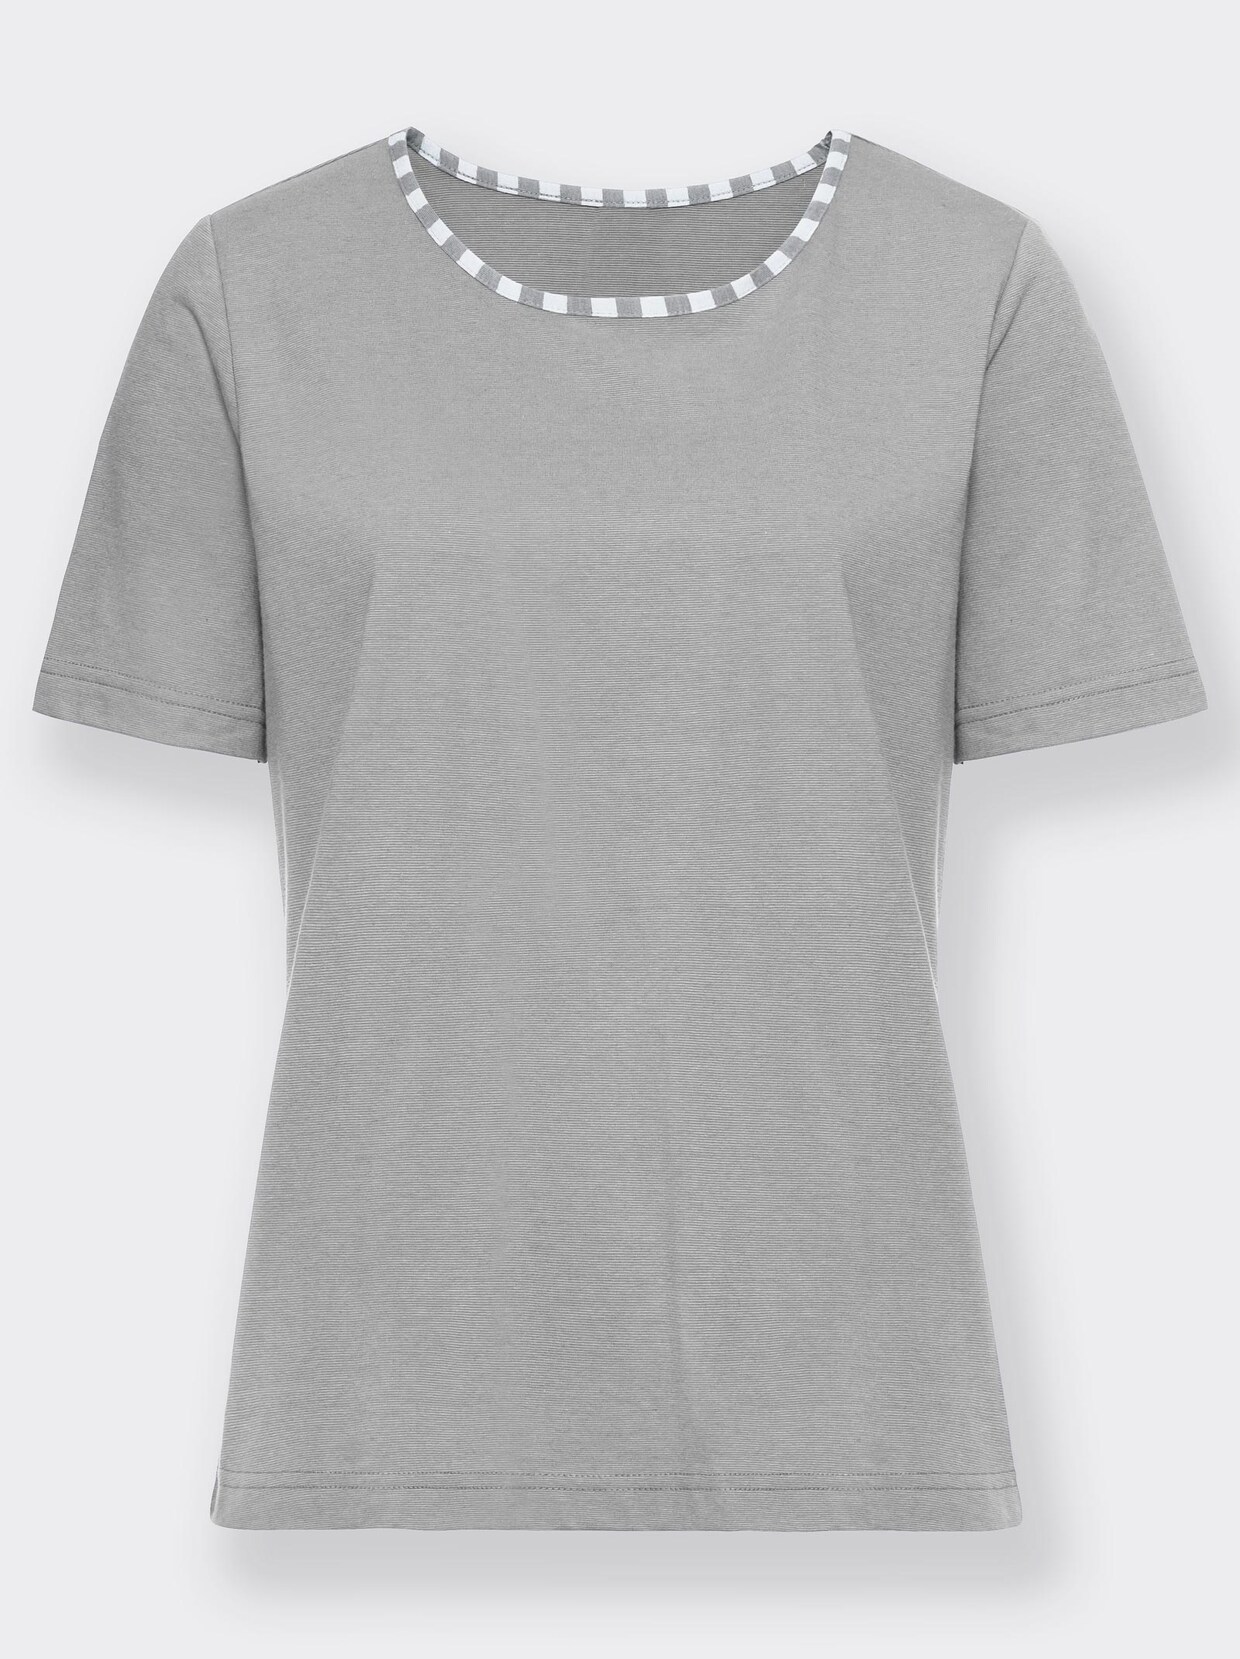 wäschepur Shirt - grau-meliert